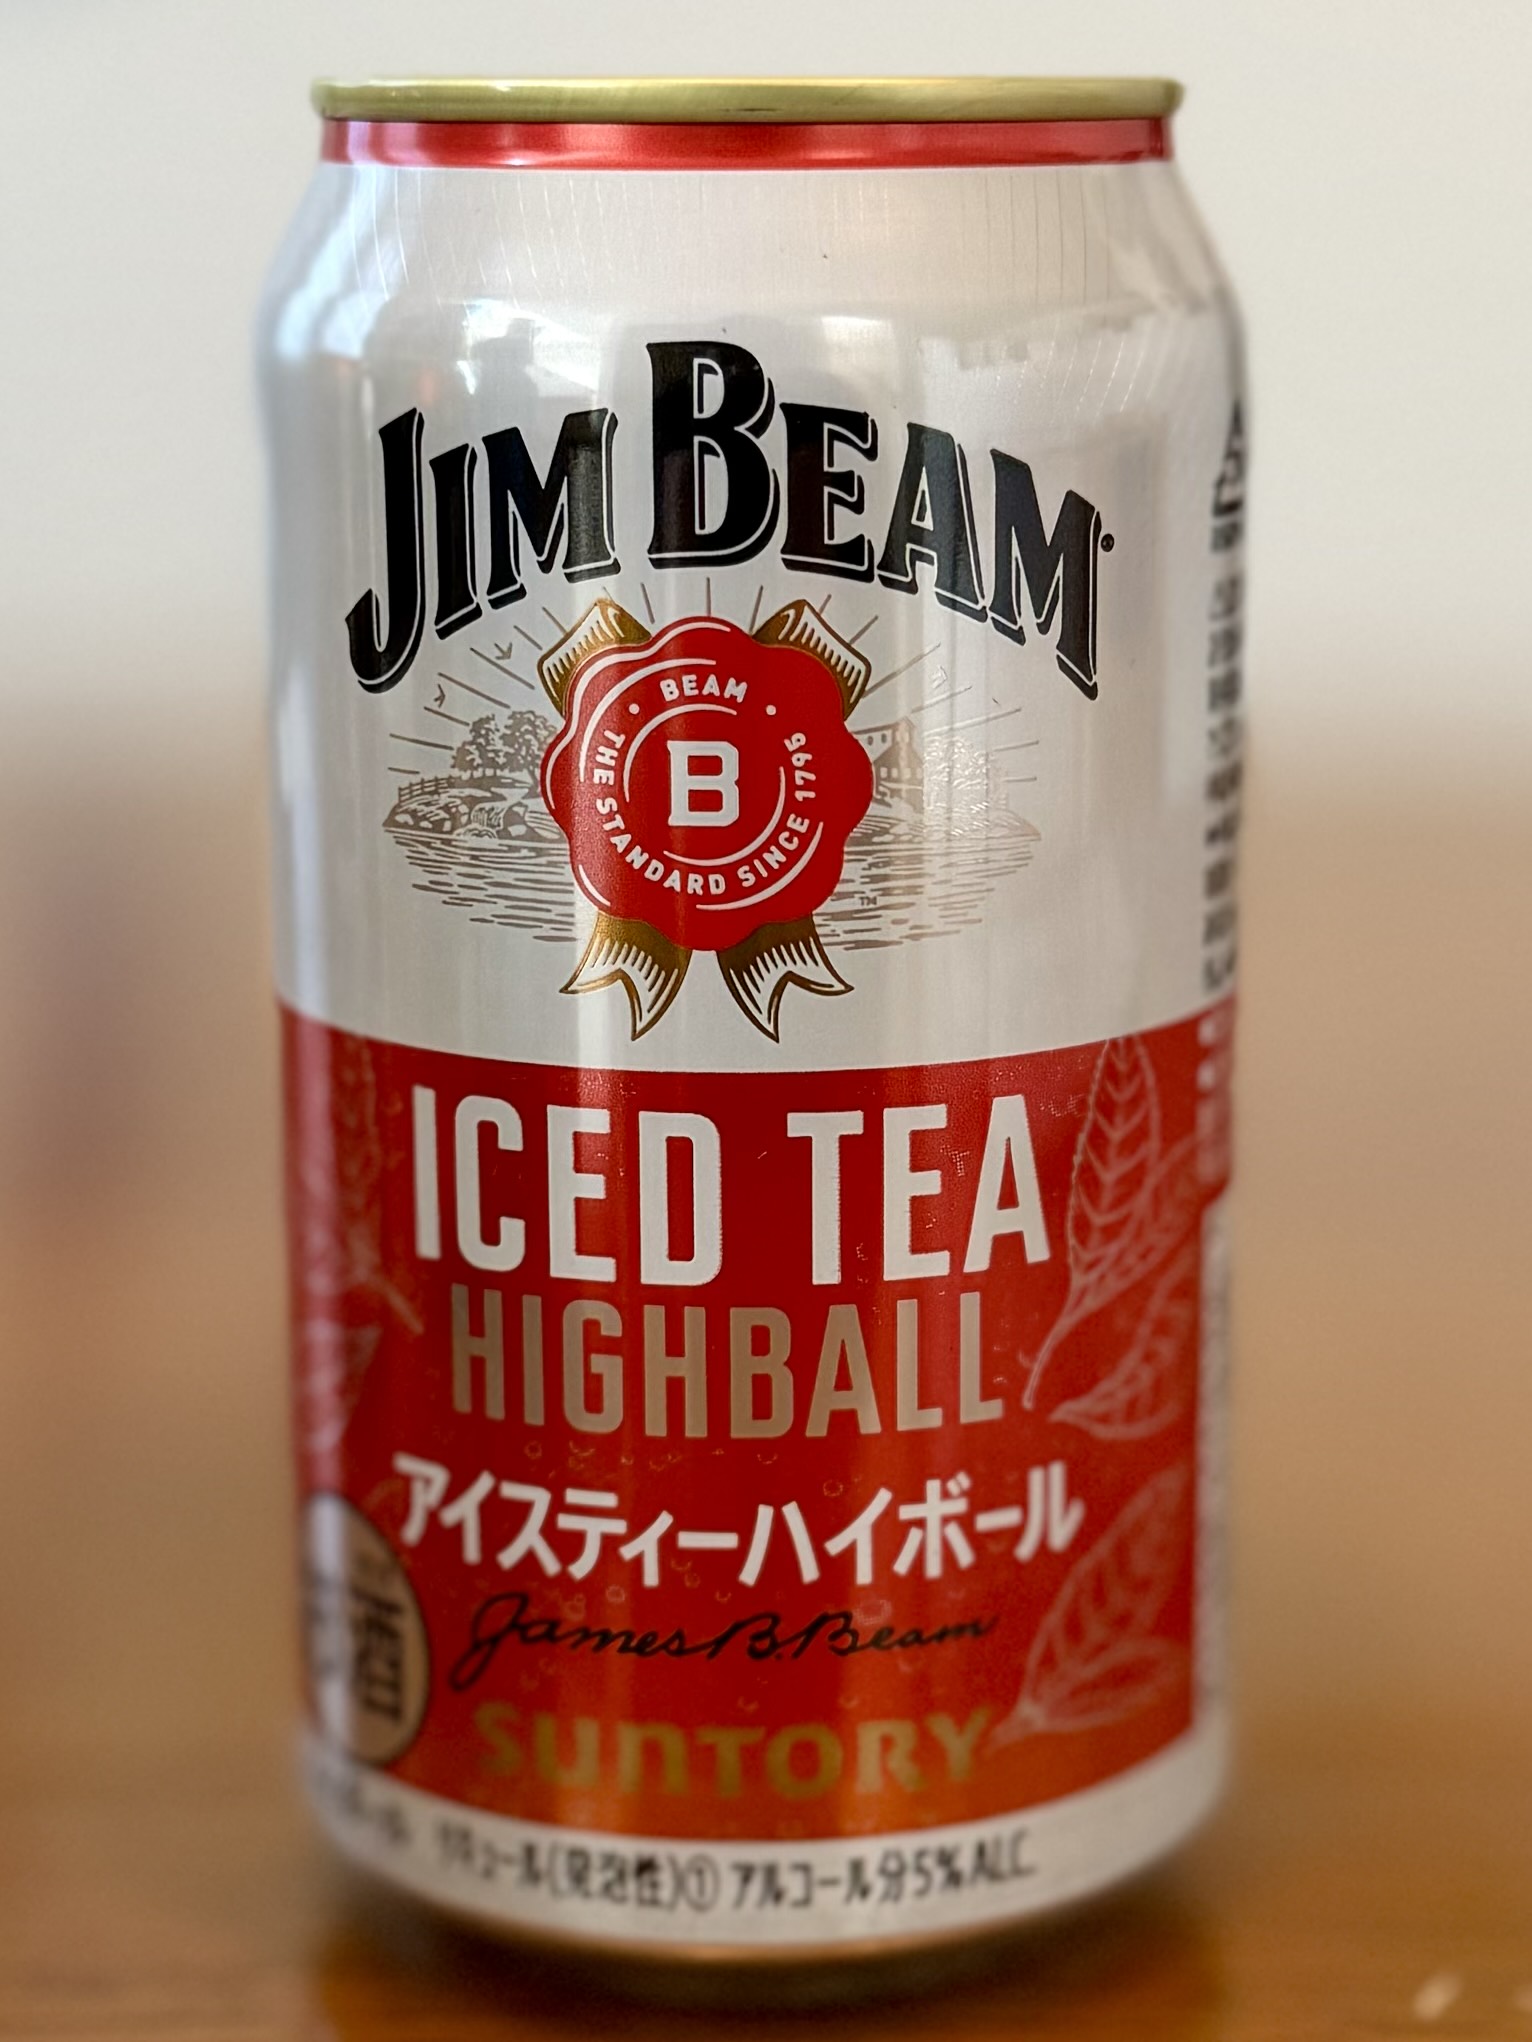 サントリー ジムビーム アイスティーハイボール SUNTORY JIM BEAM HIGH BALL ICED TEA HIGHBALL | お酒のデータベースサイト お酒DB